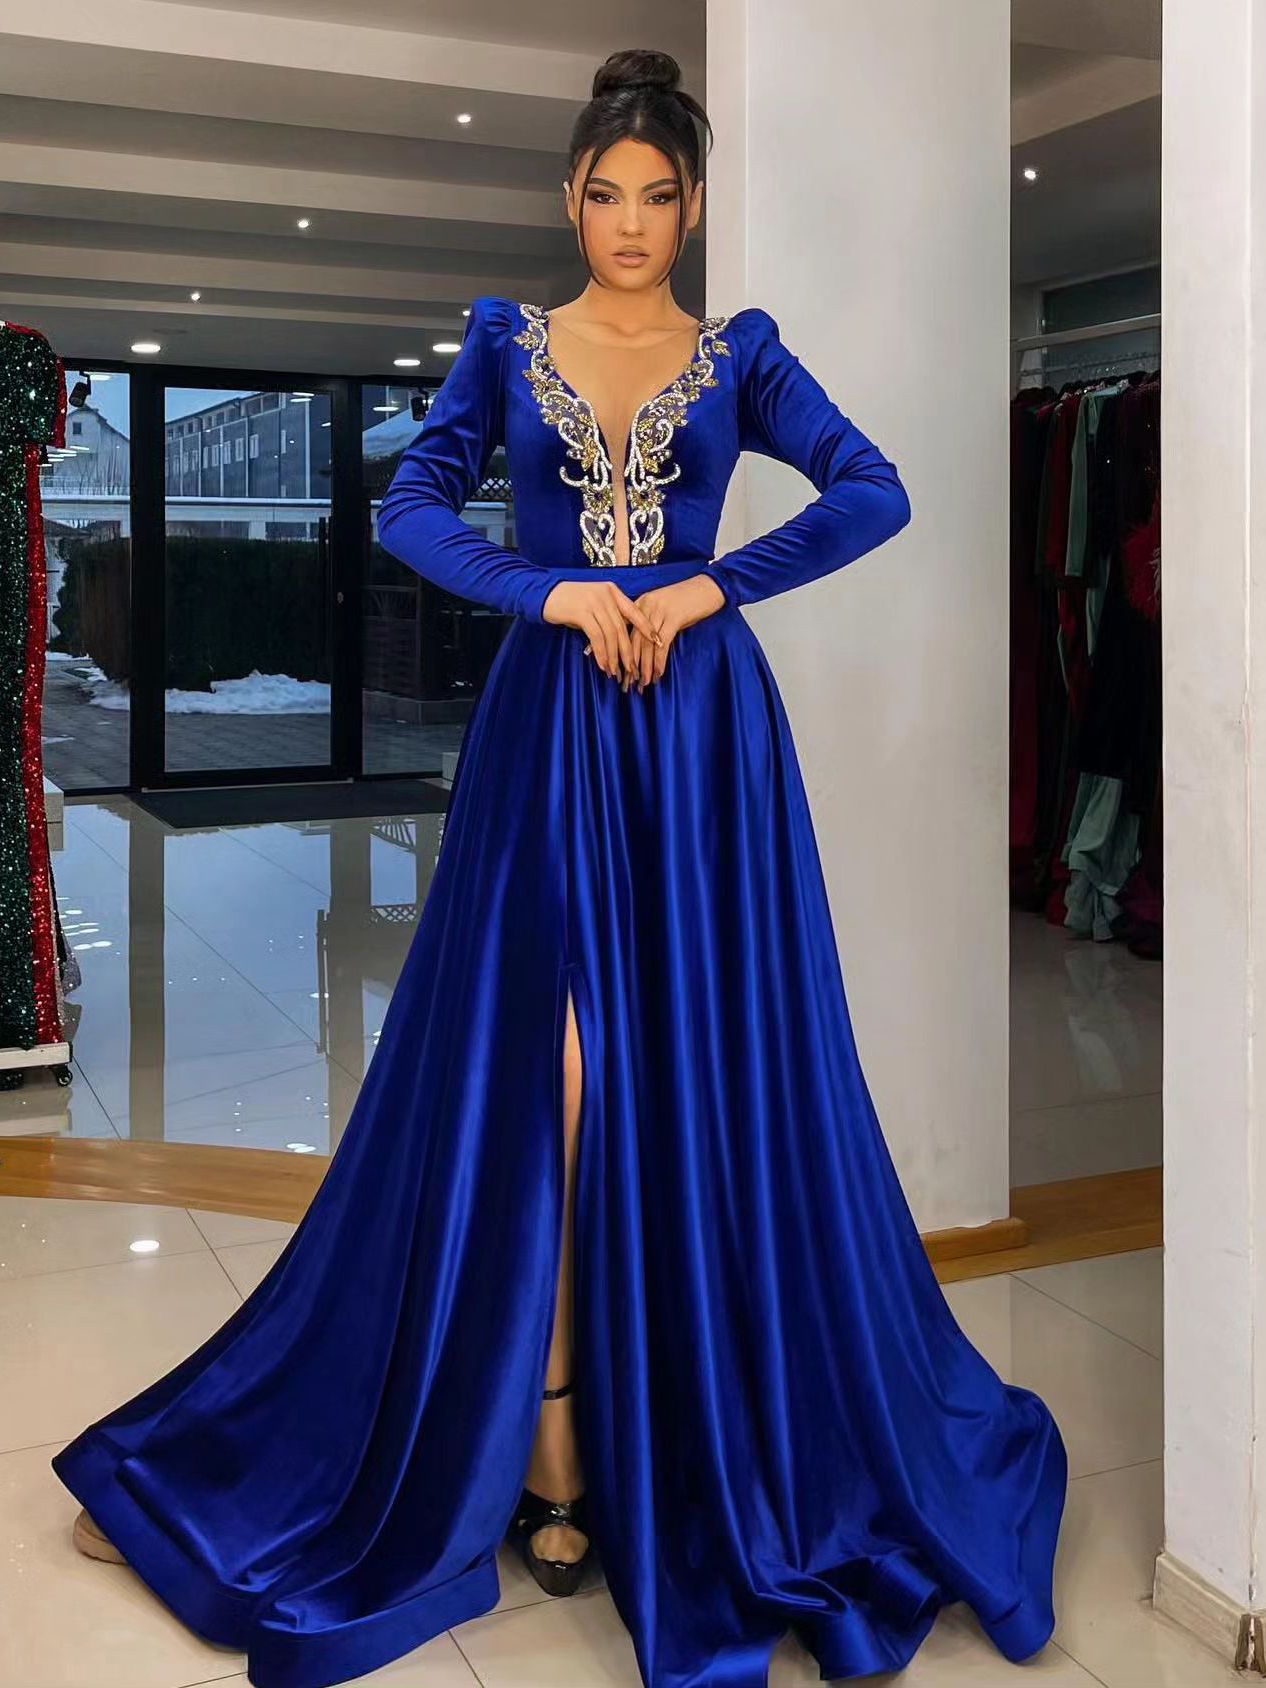 Vestido de noite sereia de veludo azul royal com miçangas douradas, decote transparente, manga comprida, vestidos de baile, fenda lateral, vestidos para ocasiões especiais